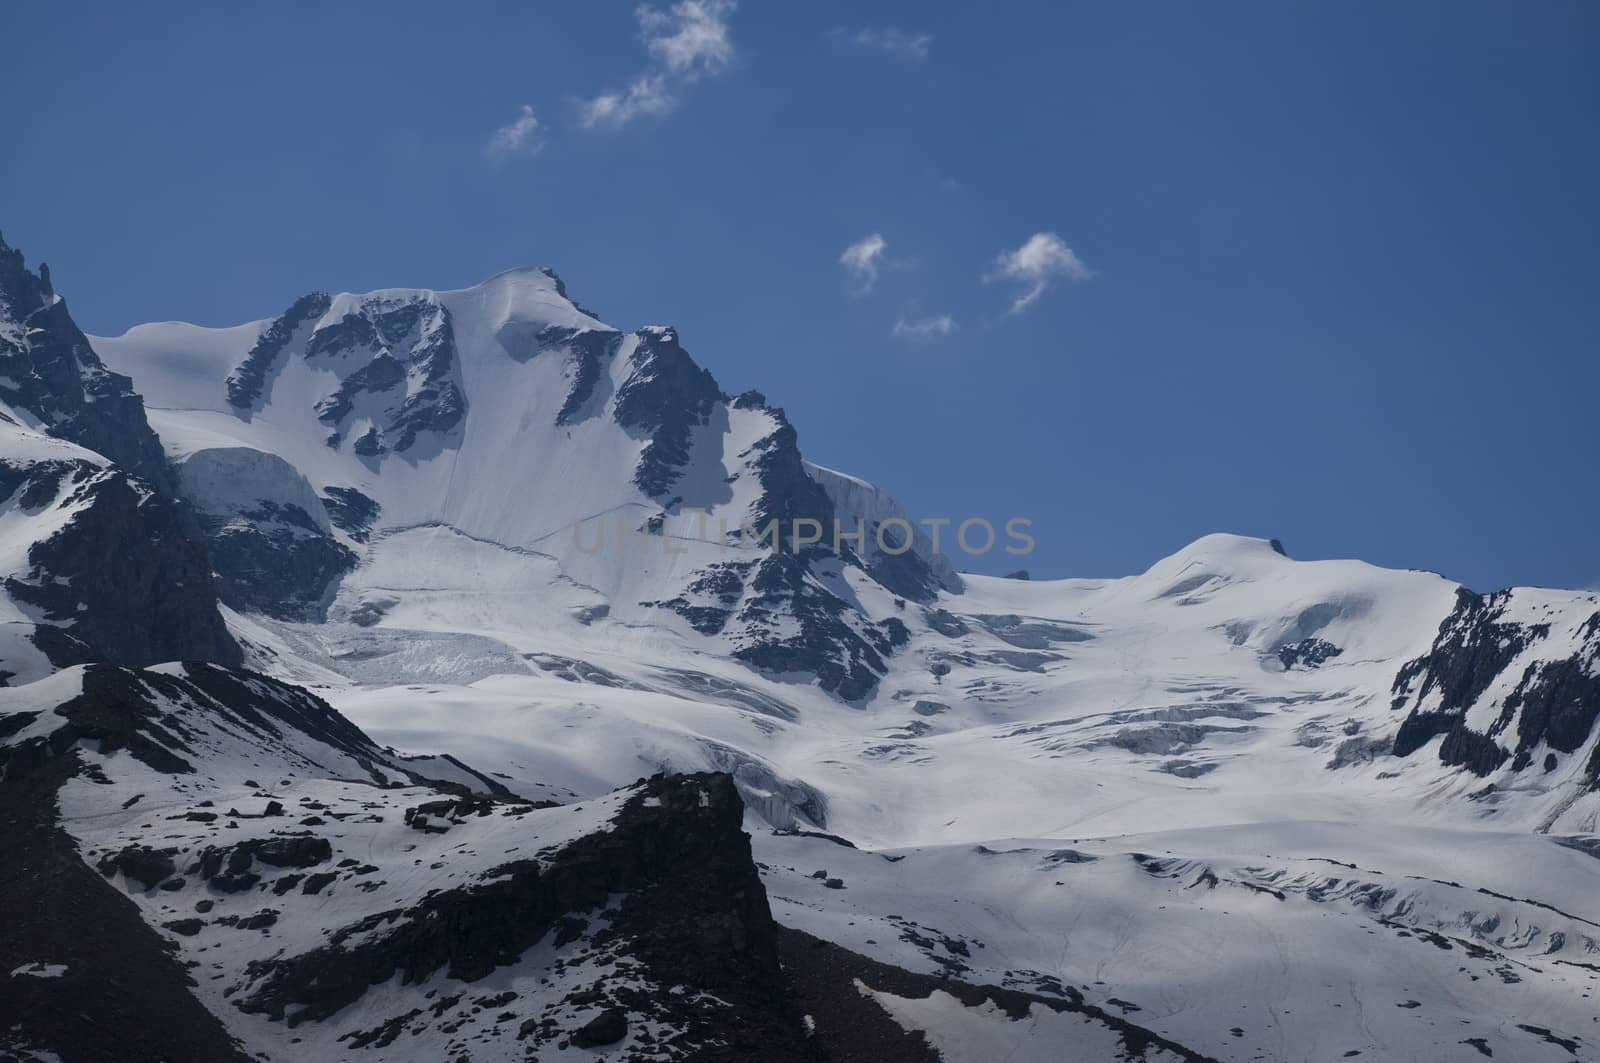 alps landscape by johny007pan